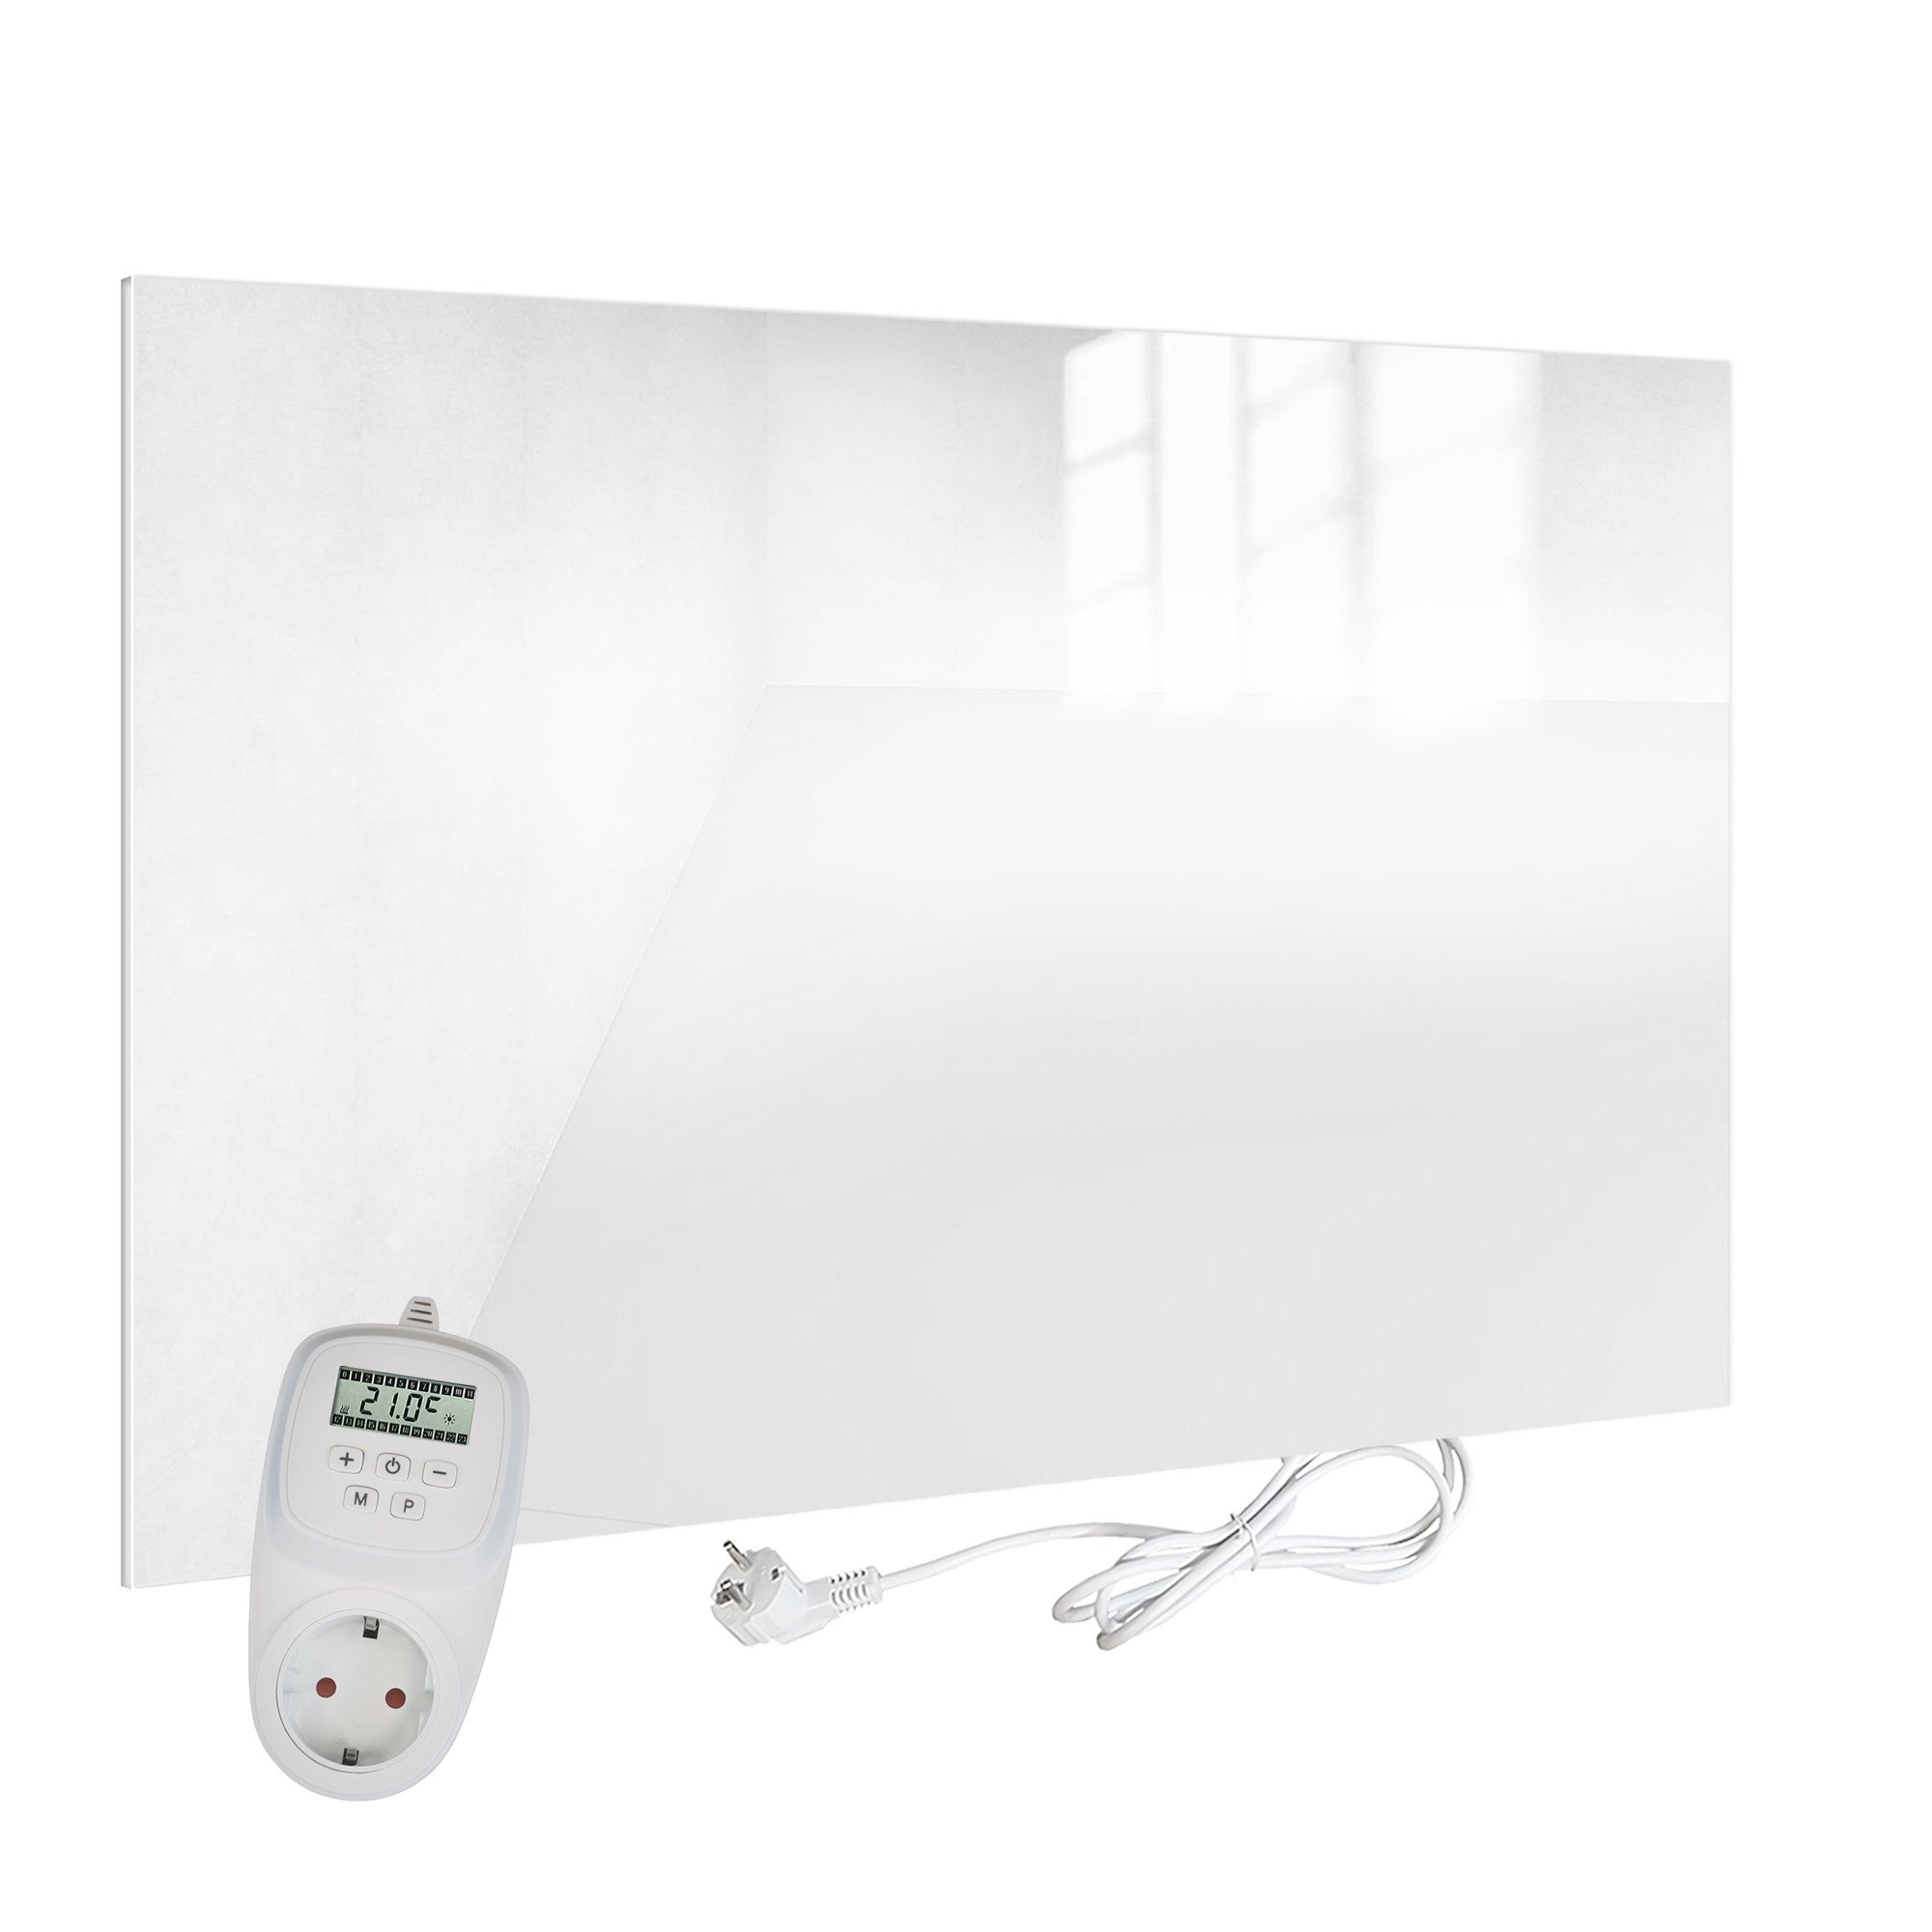 VIESTA Paneelheizkörper H450-GW weiß + TH12, VIESTA H450-GW Glas Infrarotheizung 450 Watt, weiß, mit Ein-Ausschalter + VIESTA TH12 Thermostat